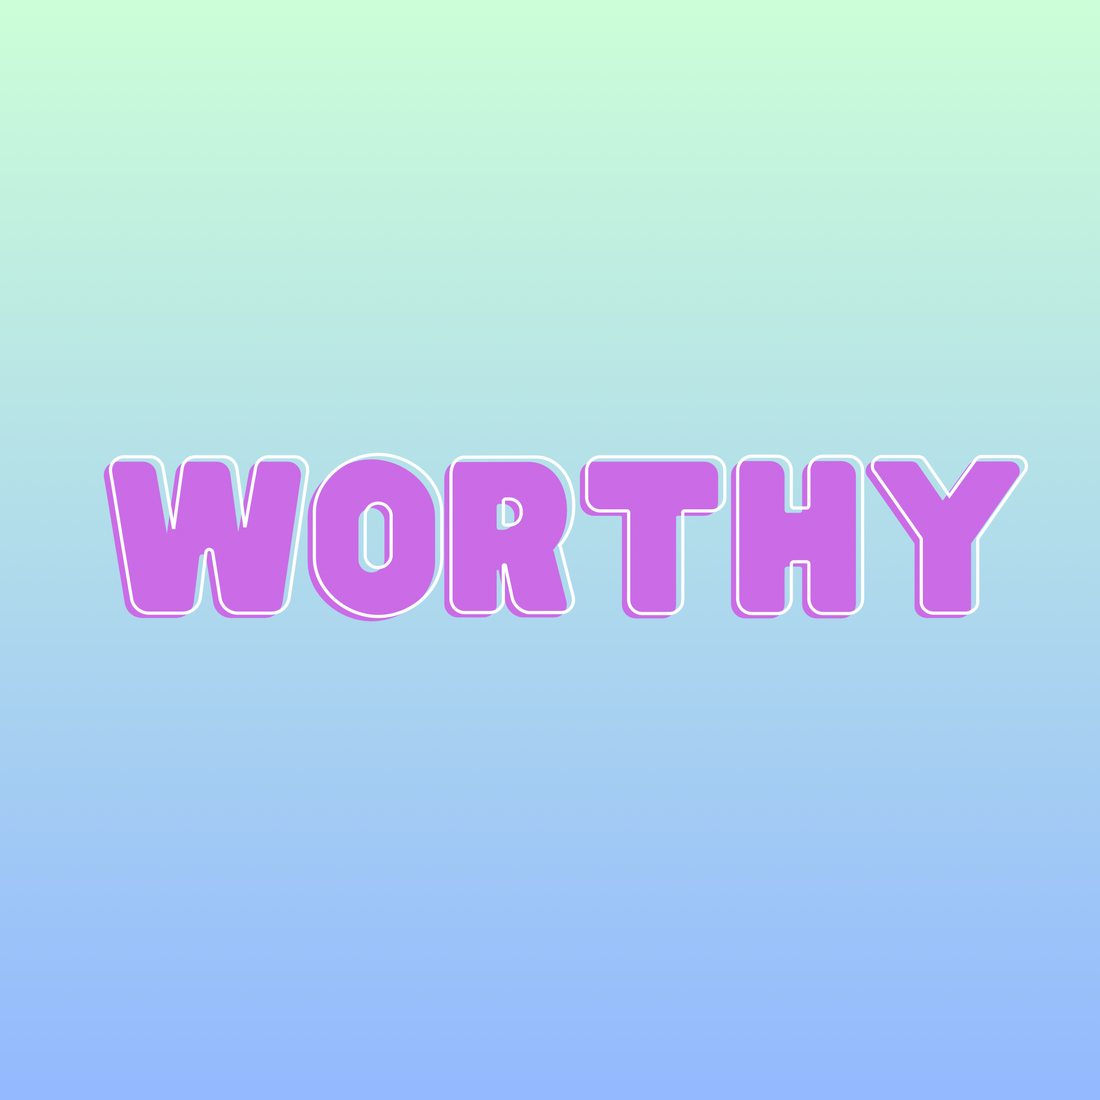 Worthy